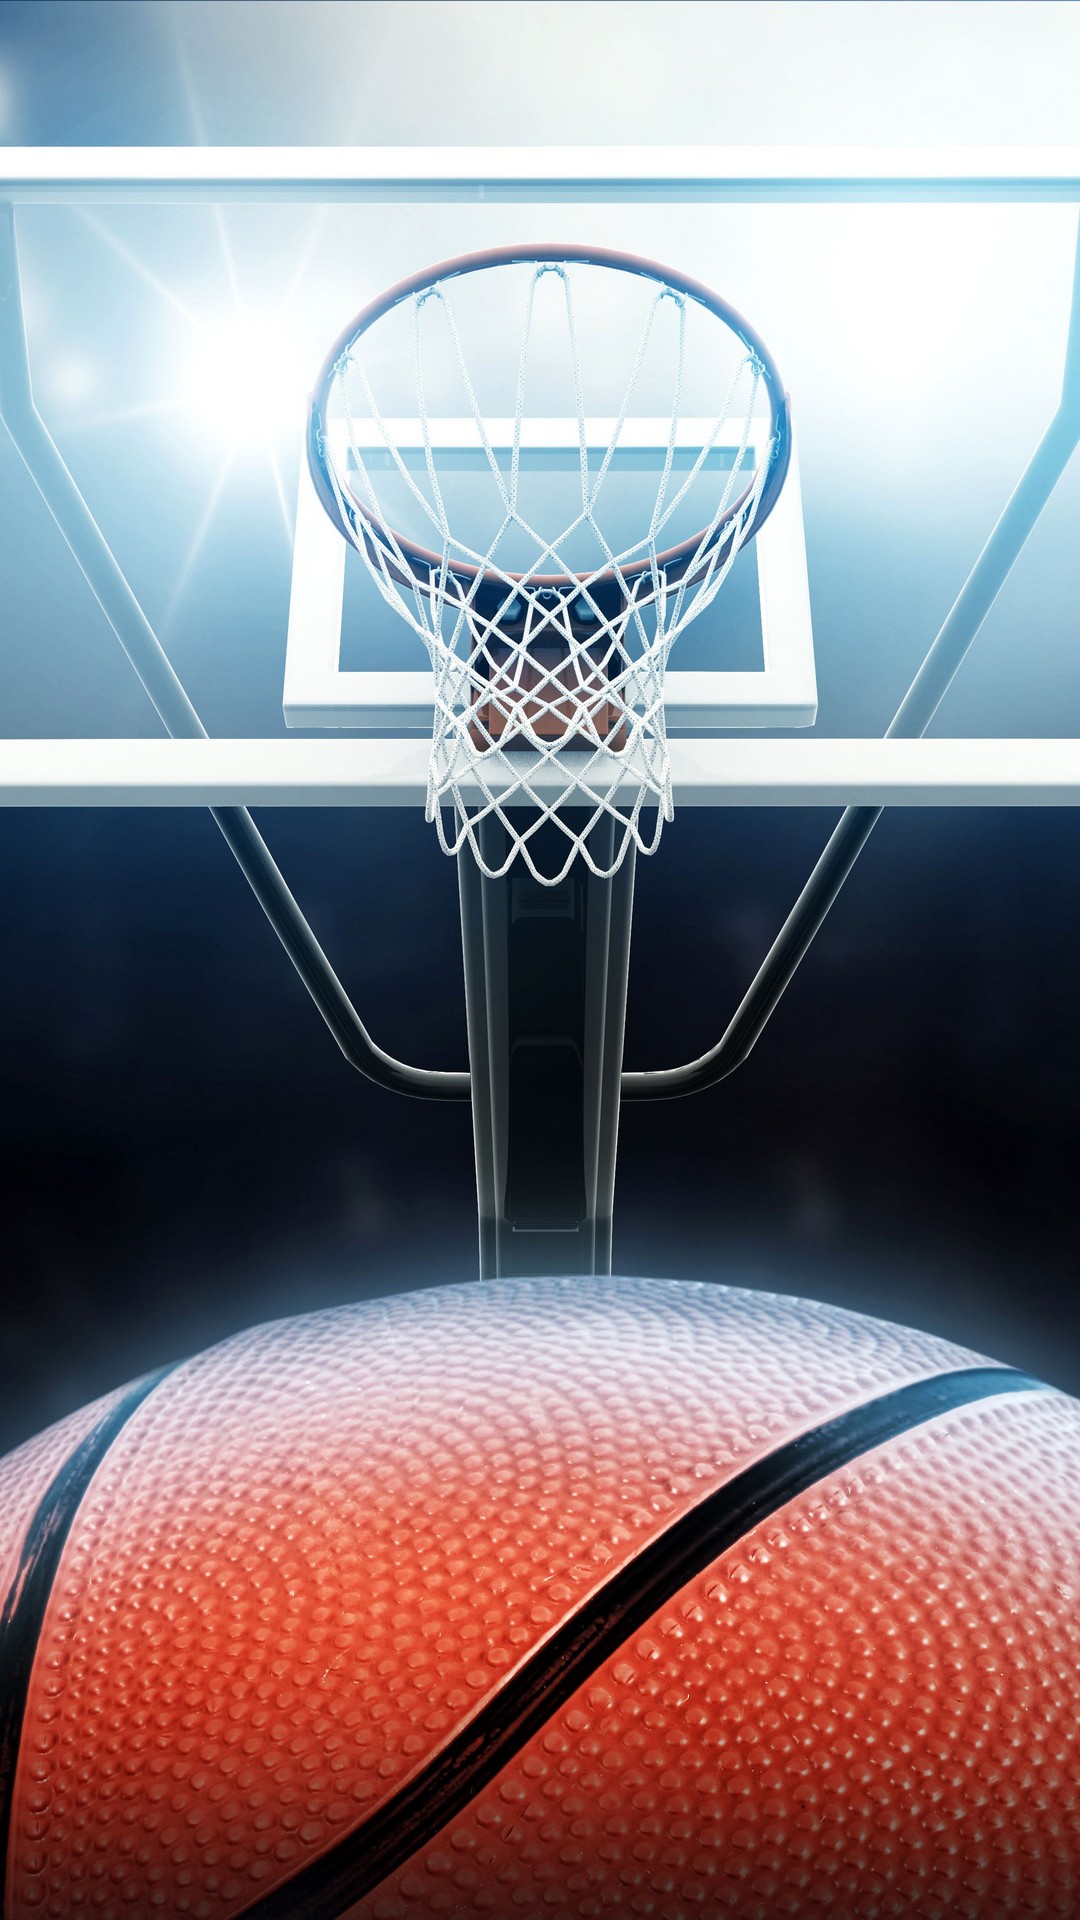 basketball wallpaper iphone,basketball hoop,basketball,net,sport venue,basketball court